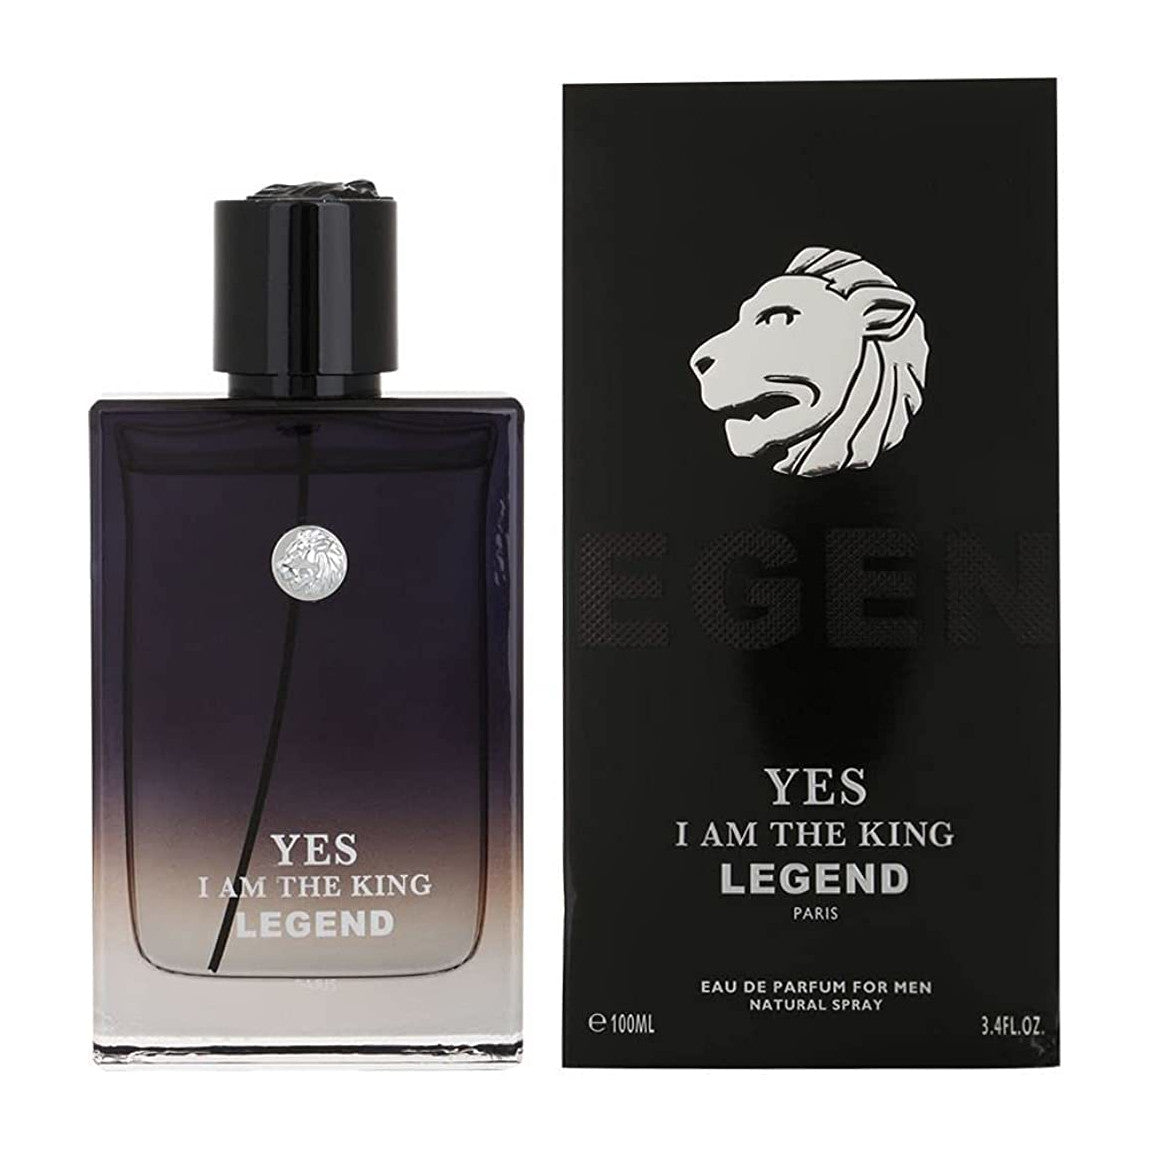 Grand Master Extrait de Parfum - Black King, 3.4 oz.